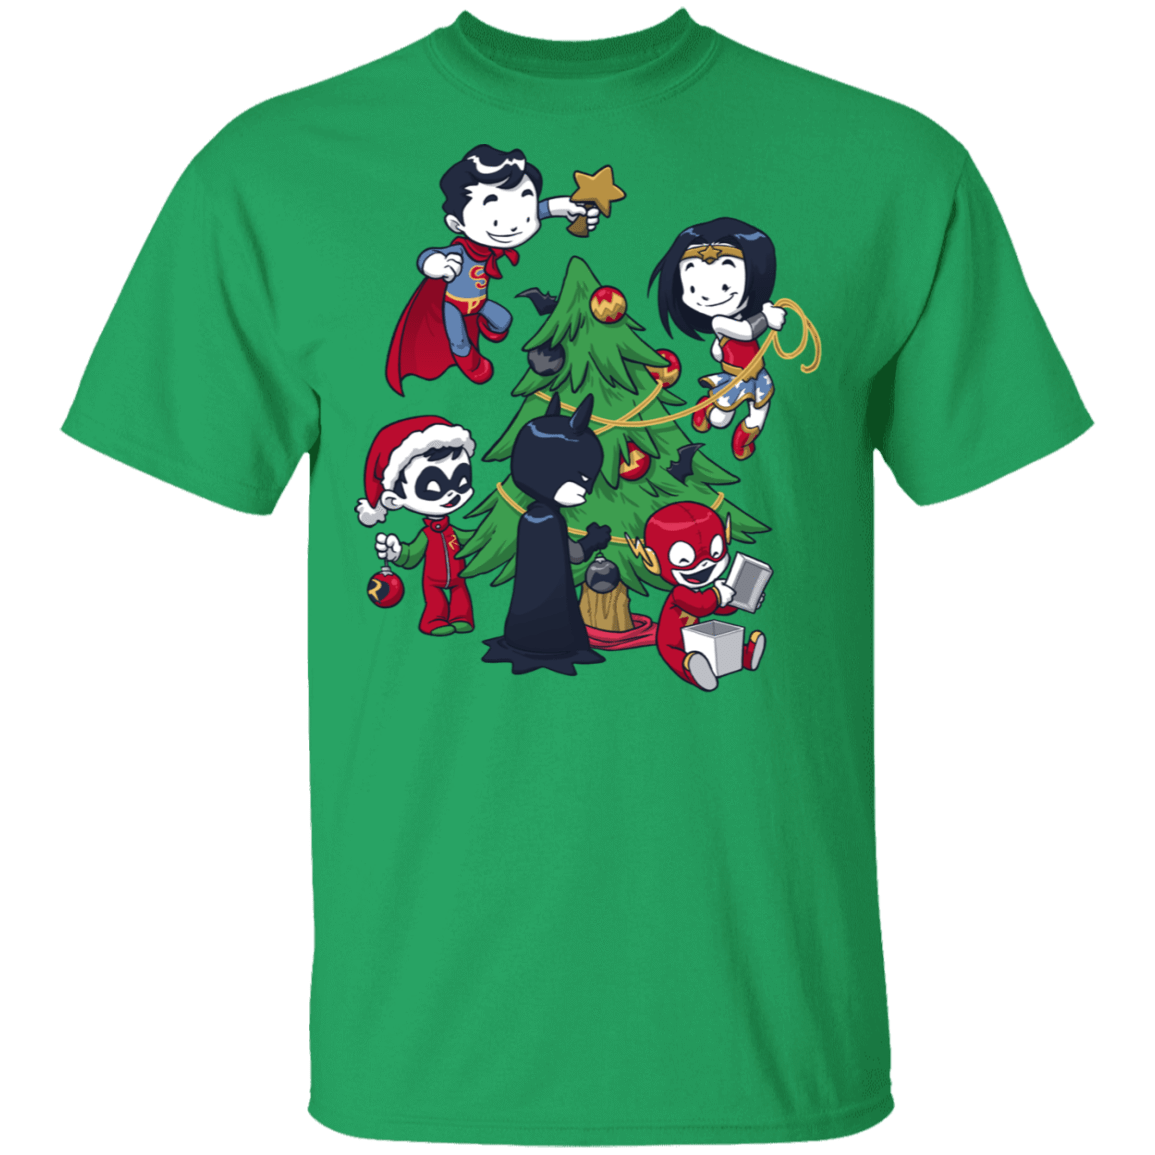 T-Shirts Irish Green / S Justice Tree T-Shirt